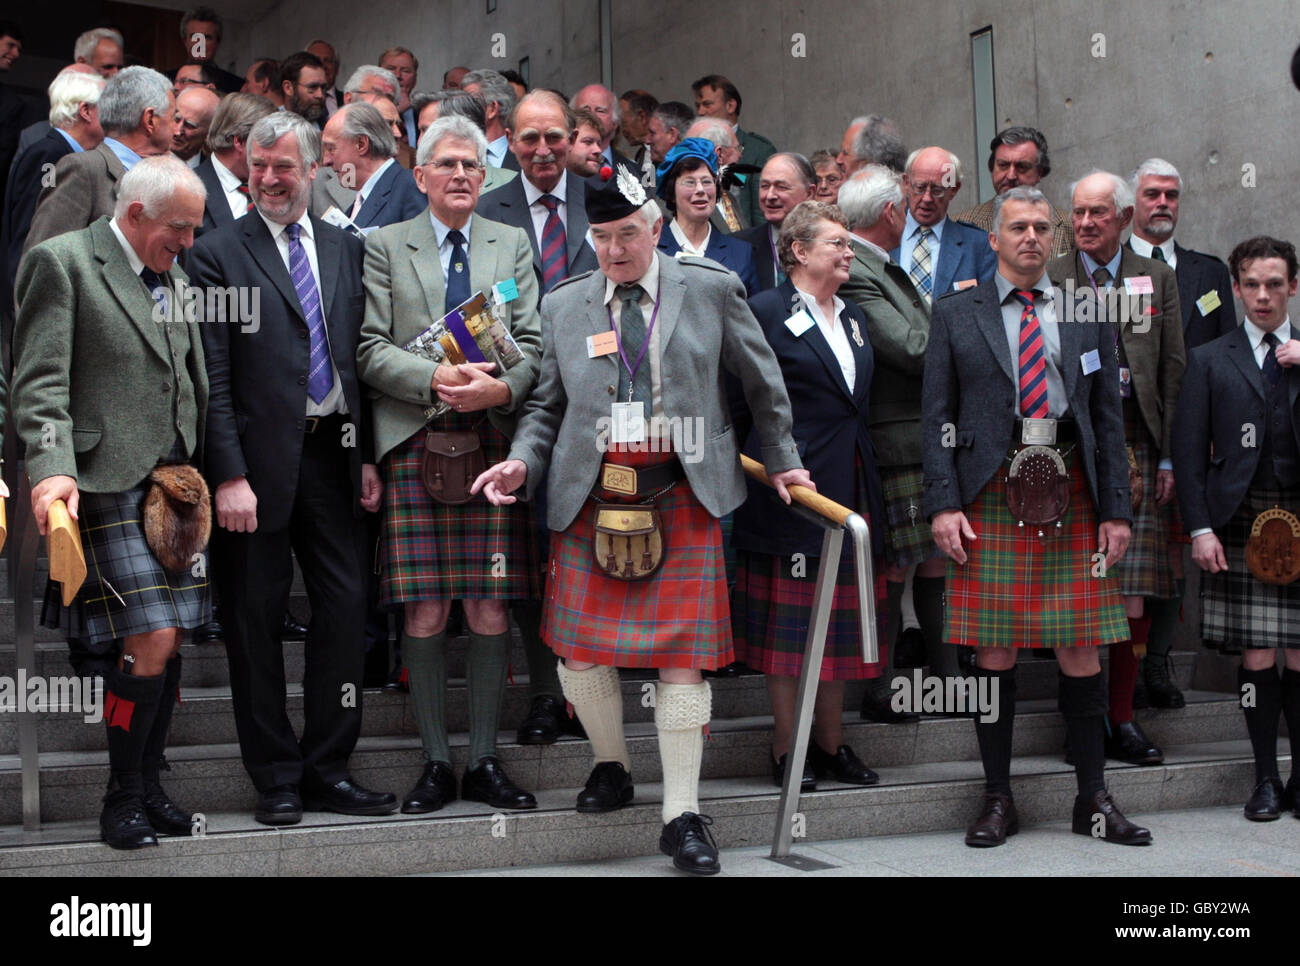 Les membres du clan à l'extérieur du Parlement écossais à Édimbourg à la Convention Clan. Une centaine de chefs de Clan écossais se rassembleront pour une convention de Clan dans le cadre du week-end de rassemblement dans la ville. Banque D'Images